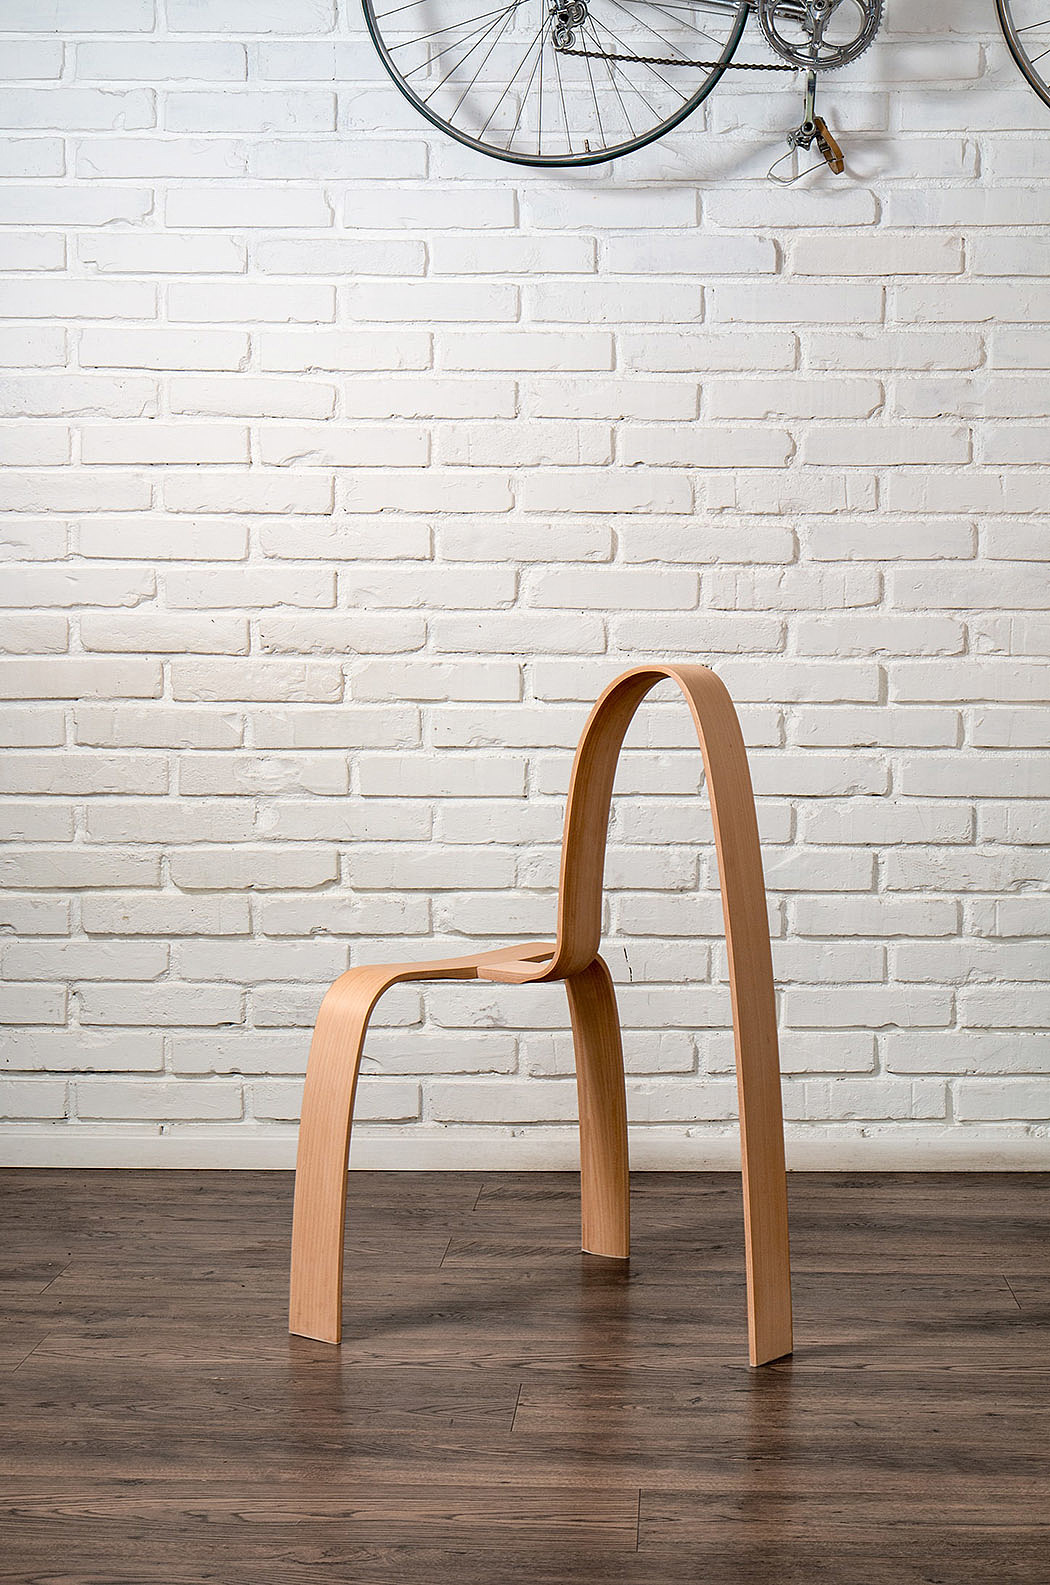 椅子，木材，Miroslav Truben，转载，